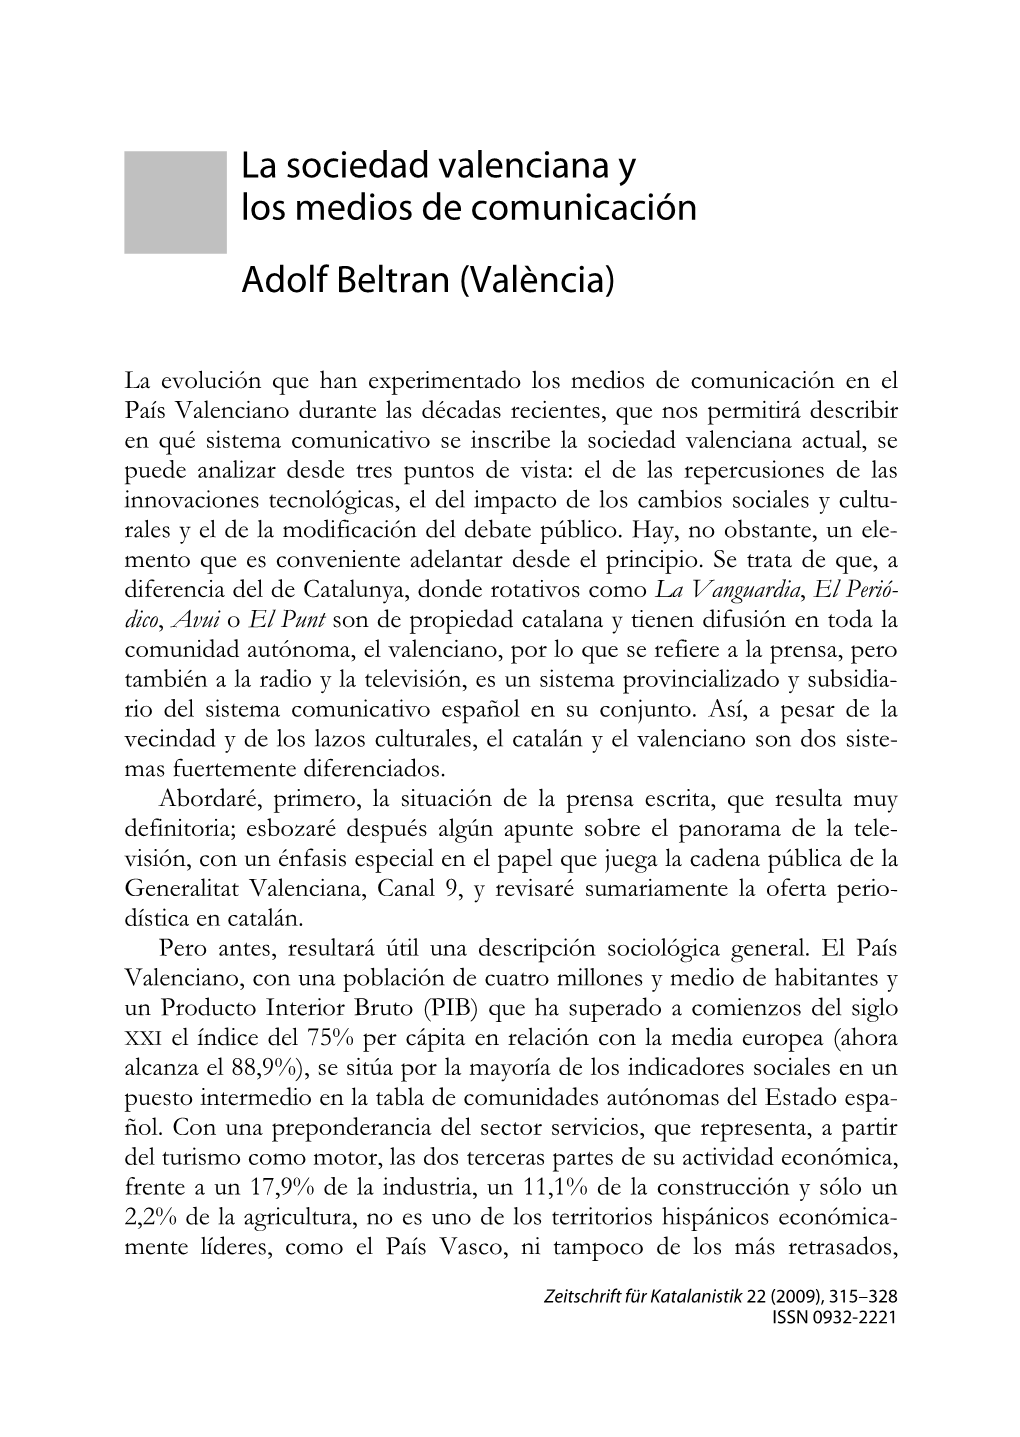 La Sociedad Valenciana Y Los Medios De Comunicación Adolf Beltran (València)